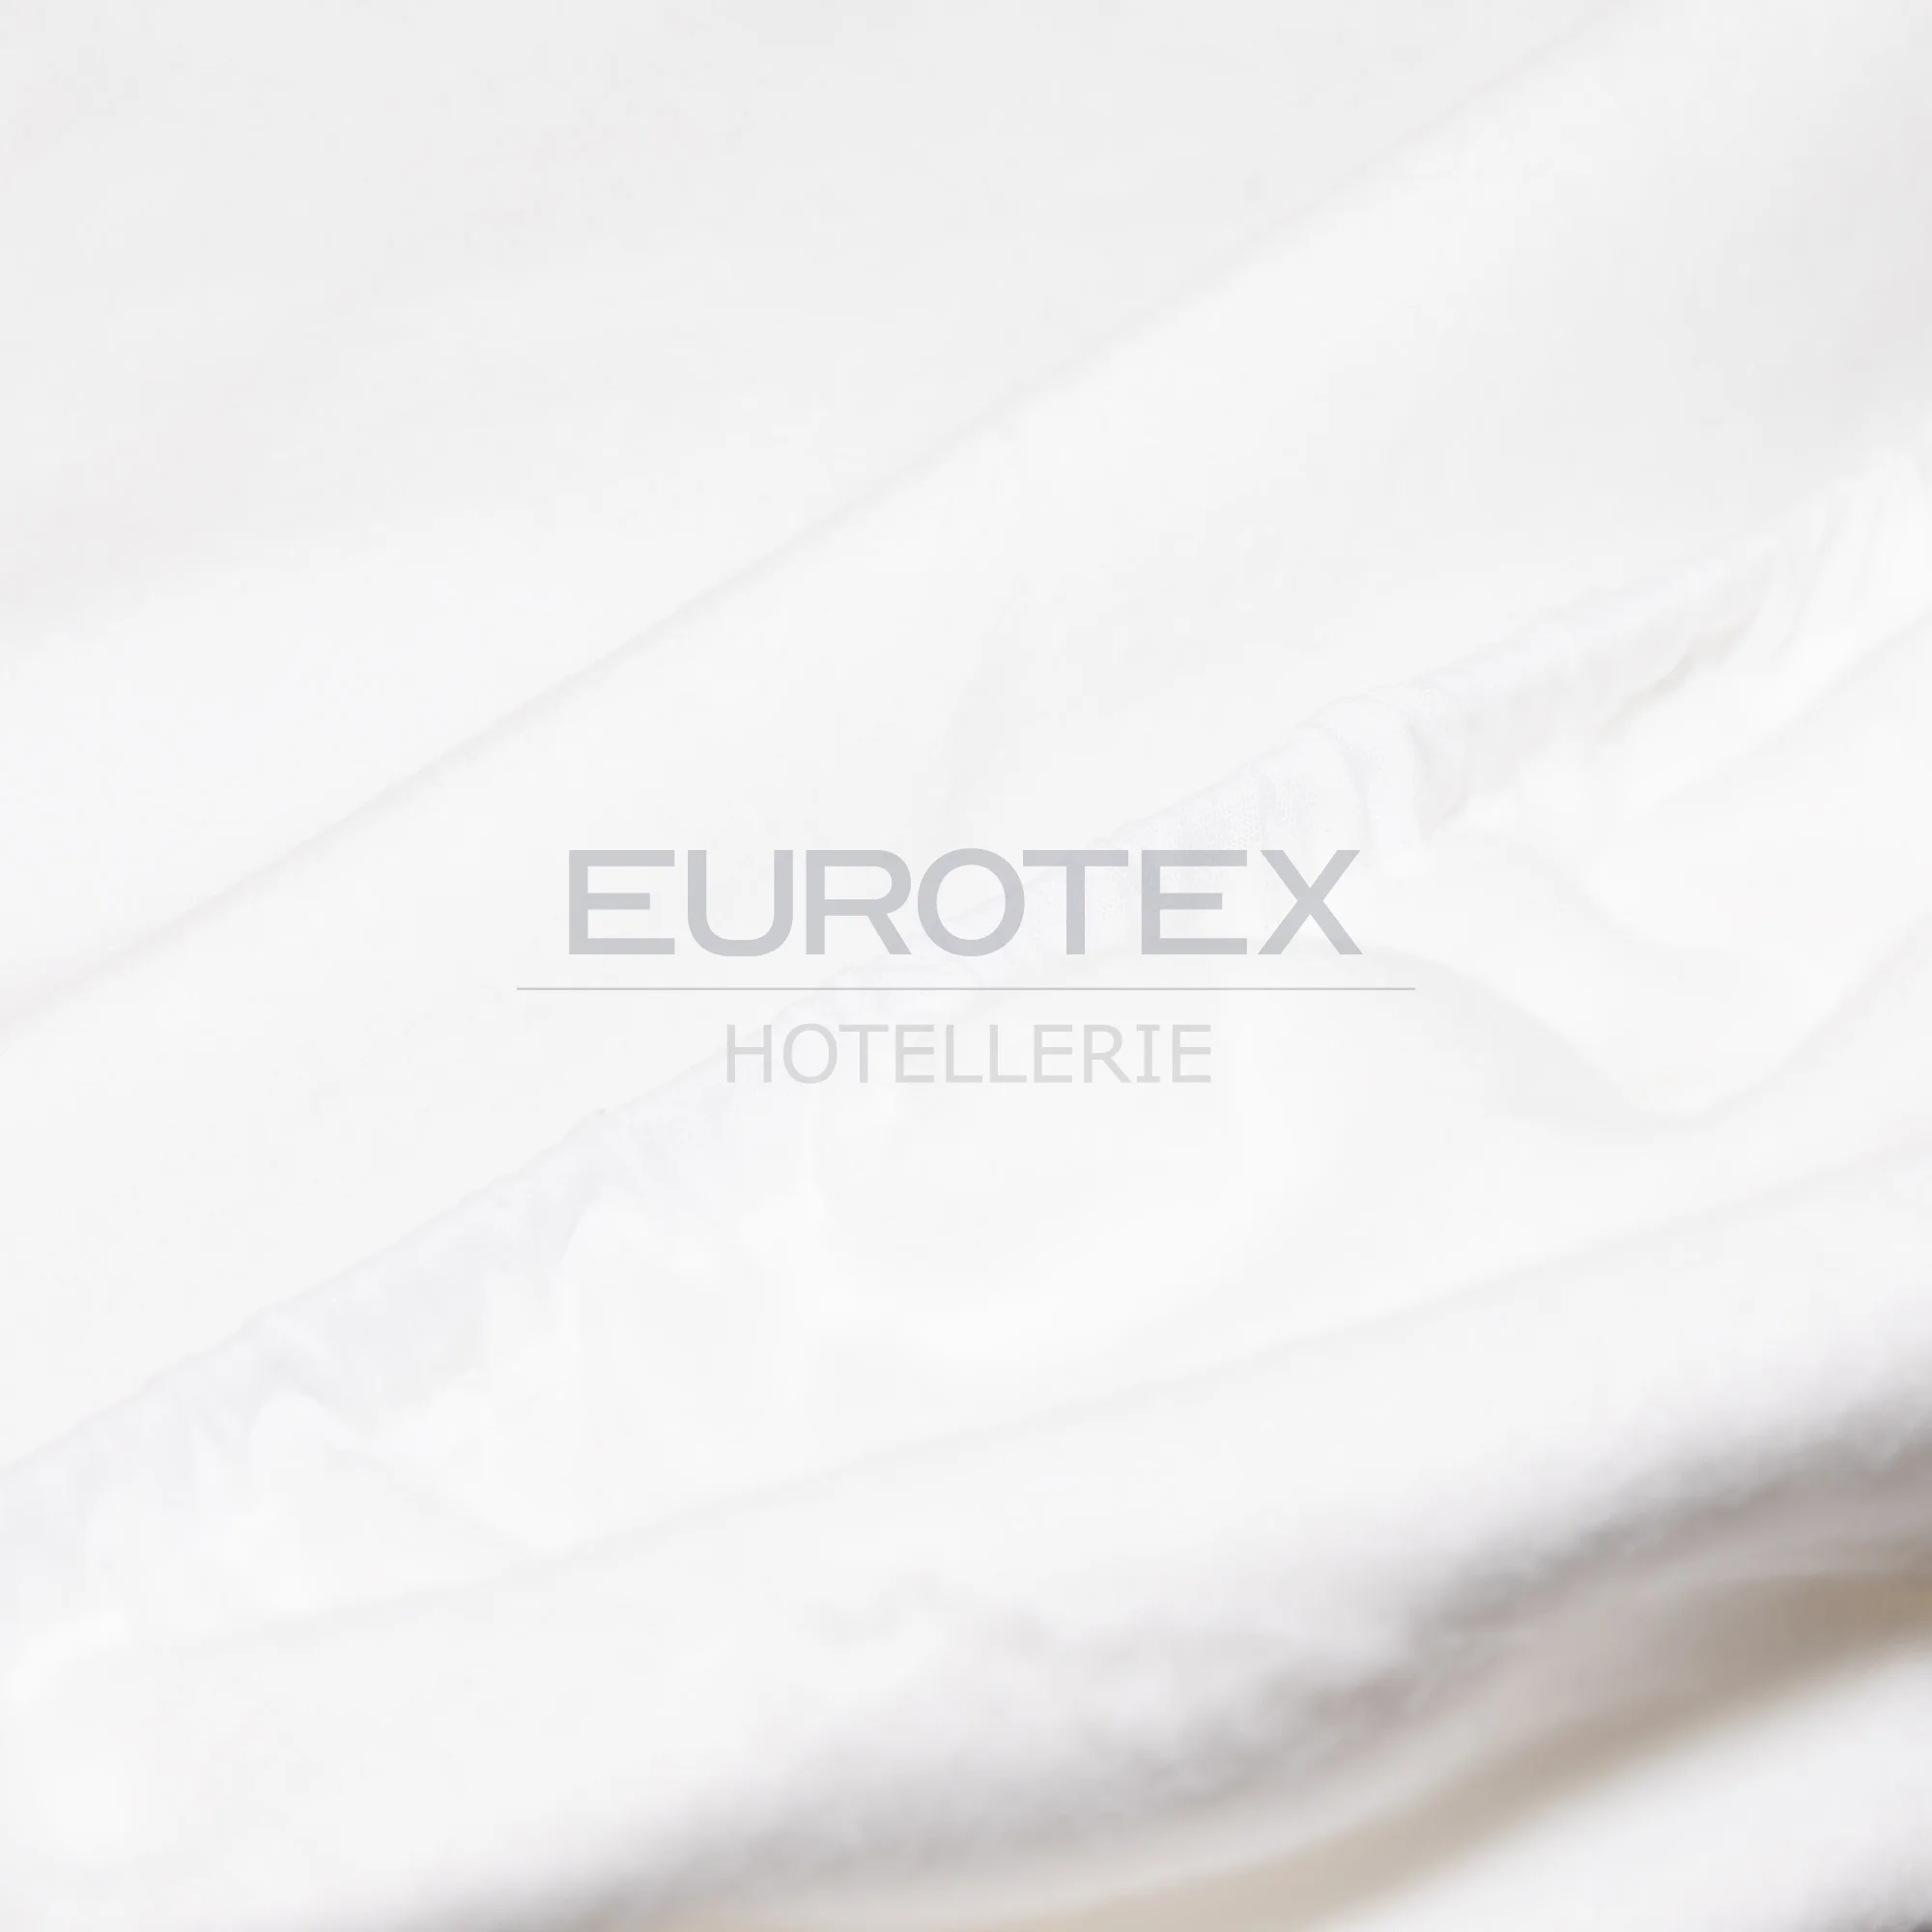 Mollettone tavola: a cosa serve e come sceglierlo - Eurotex Hotellerie